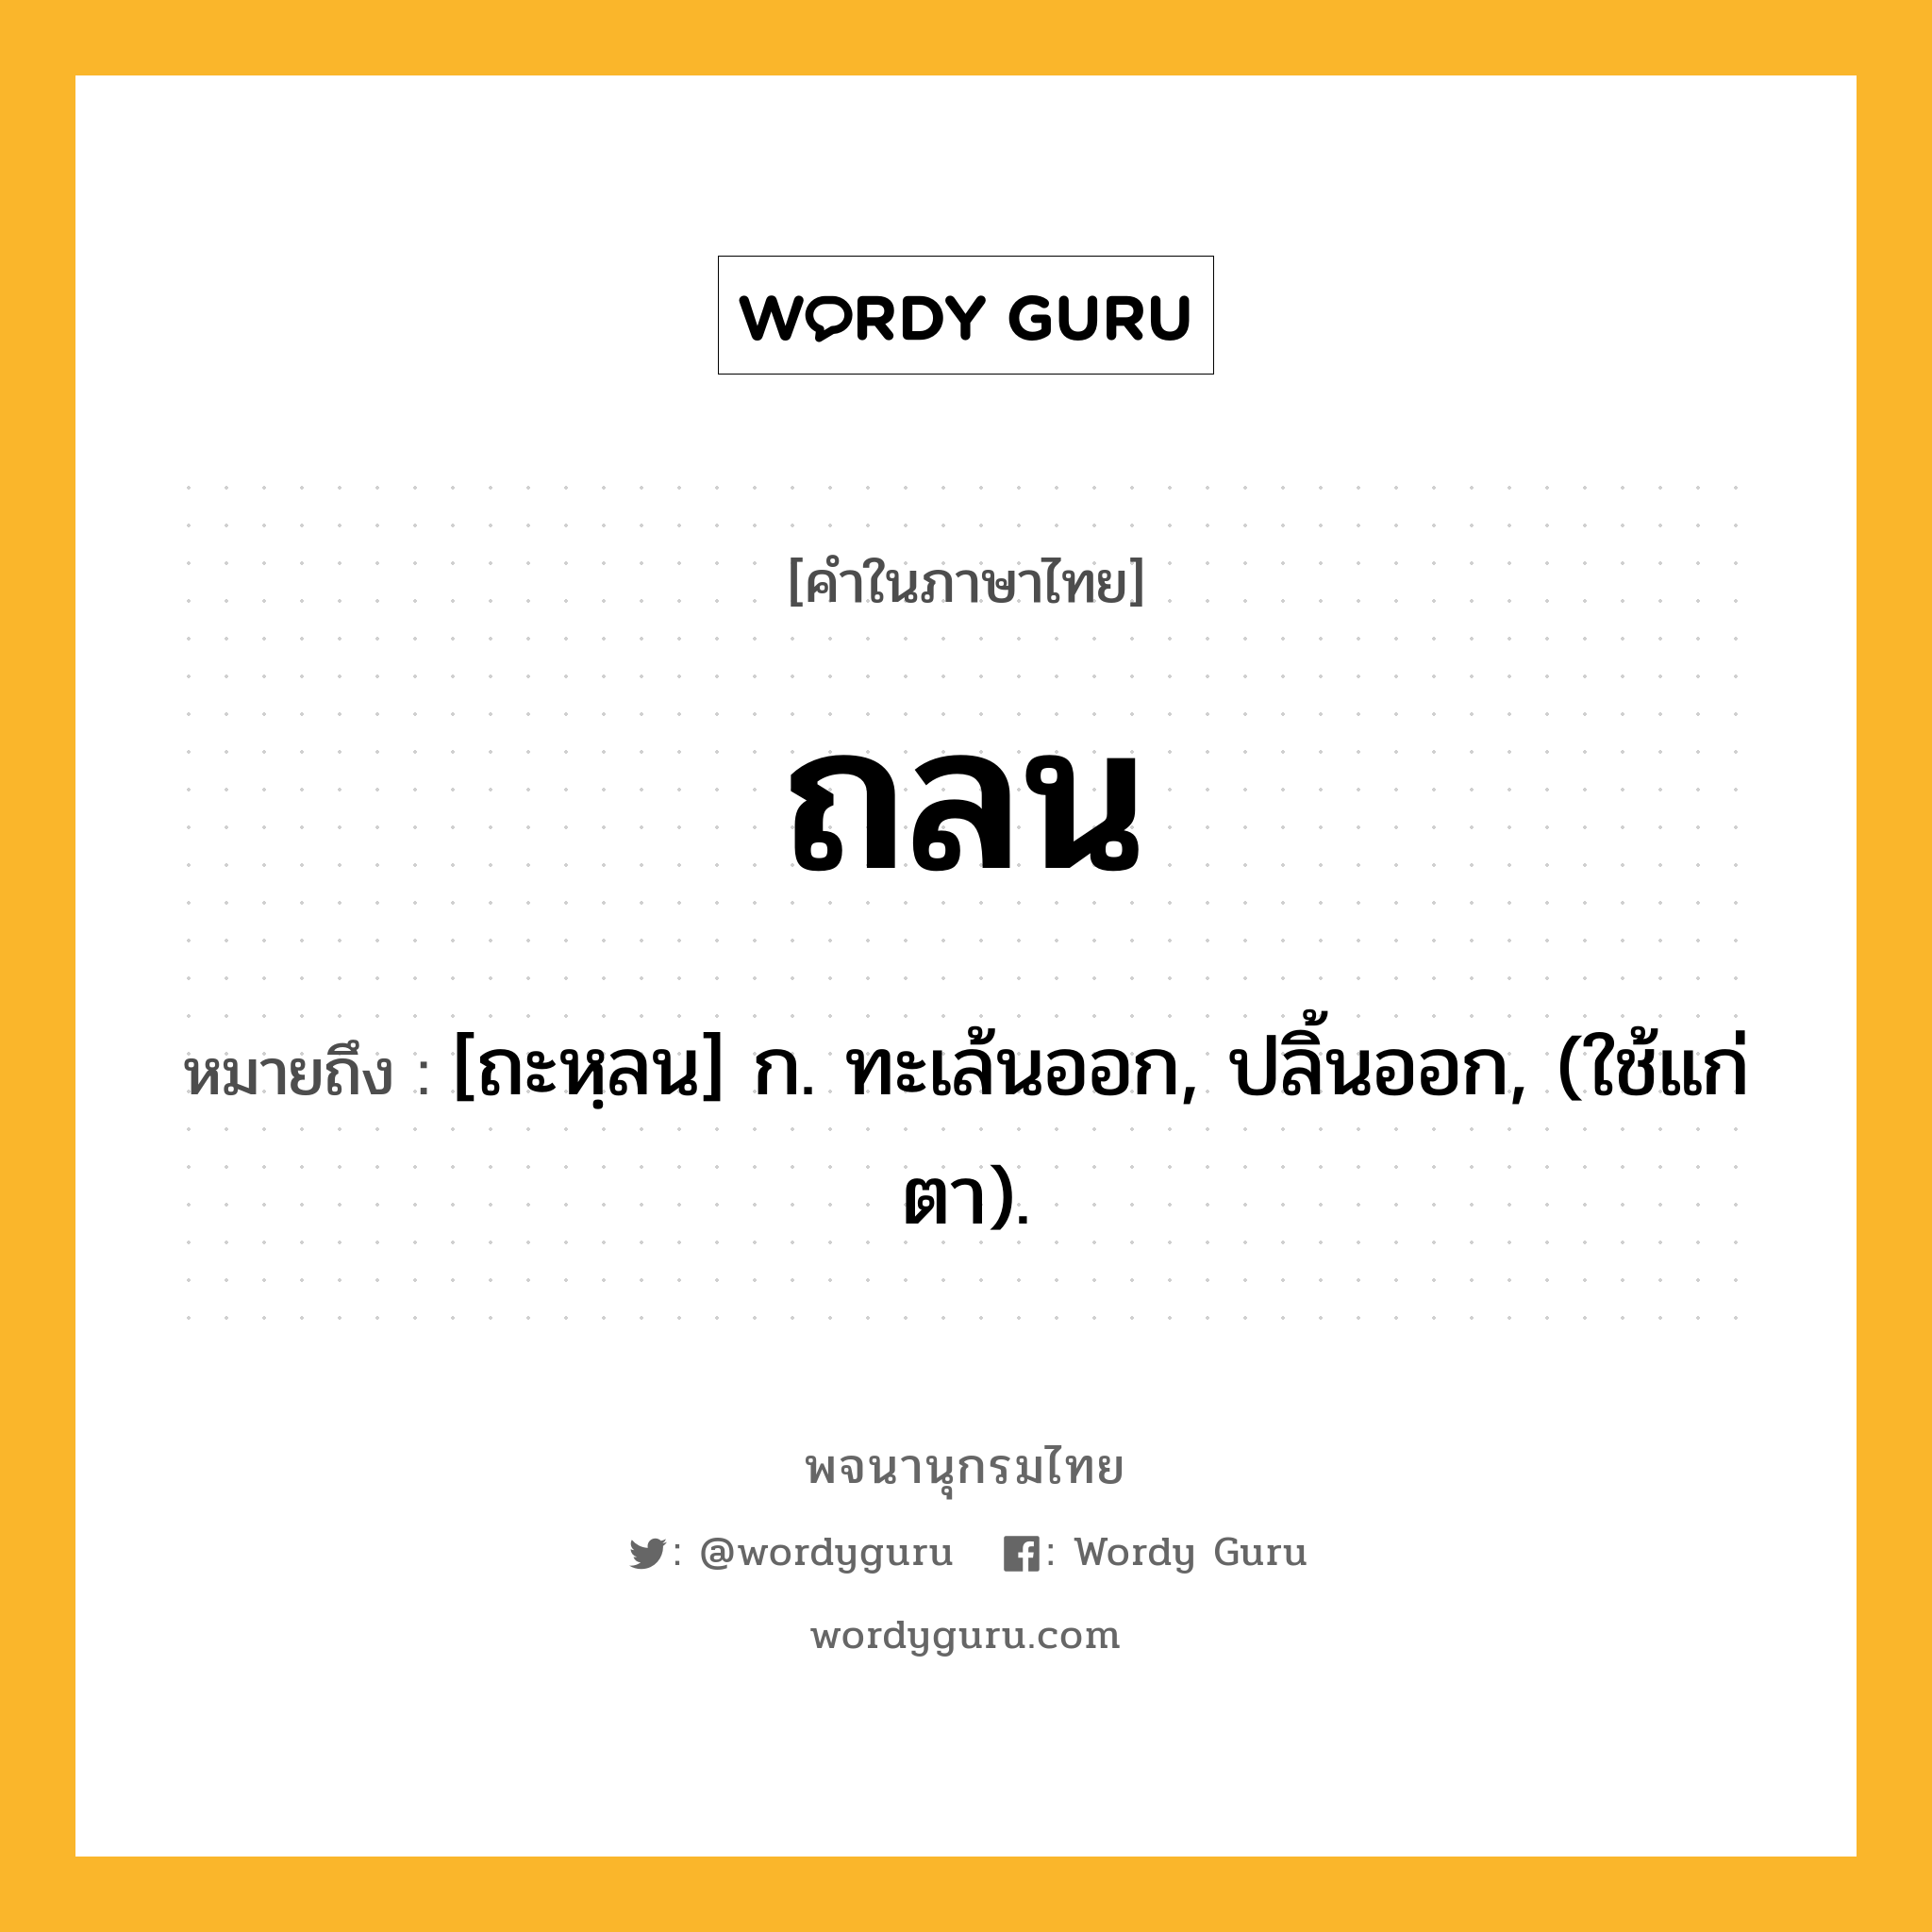 ถลน ความหมาย หมายถึงอะไร?, คำในภาษาไทย ถลน หมายถึง [ถะหฺลน] ก. ทะเล้นออก, ปลิ้นออก, (ใช้แก่ตา).